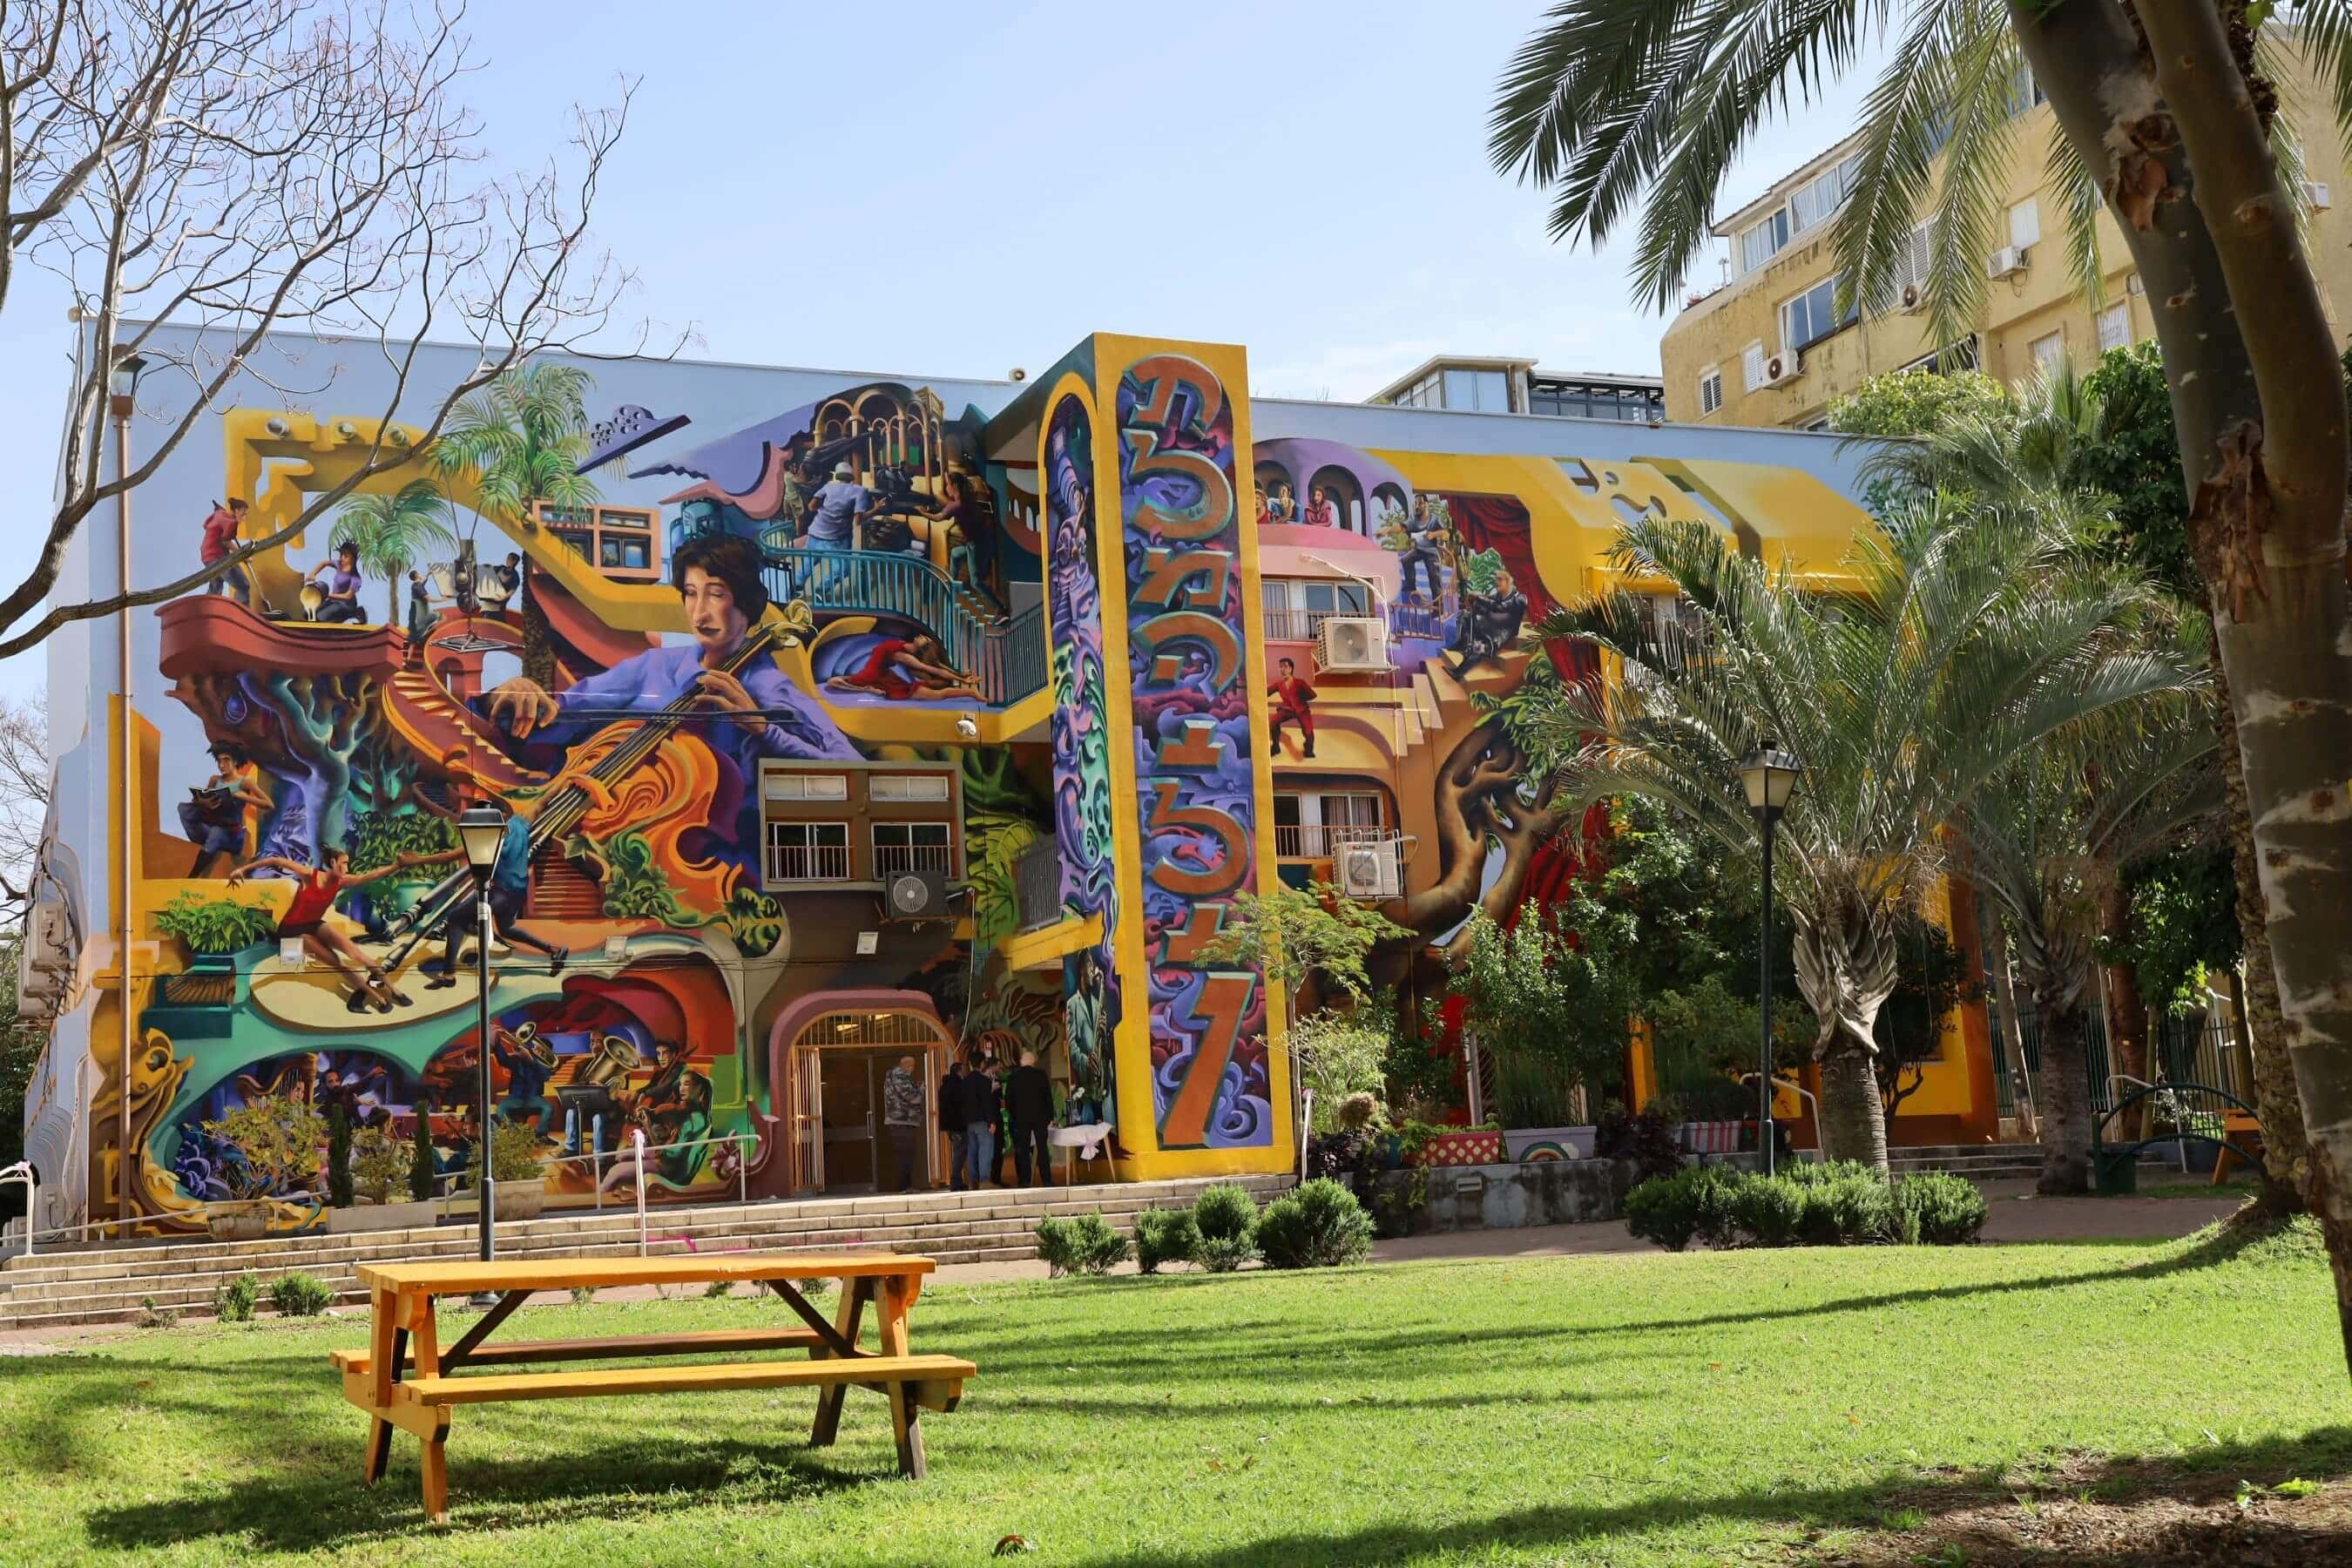 בית הספר תלמה ילין אחרי שעבר שיפוץ חיצוני שכלל ציורי קיר מרהיבים, פברואר 2021 (צילום: באדיבות דוברות עיריית גבעתיים)